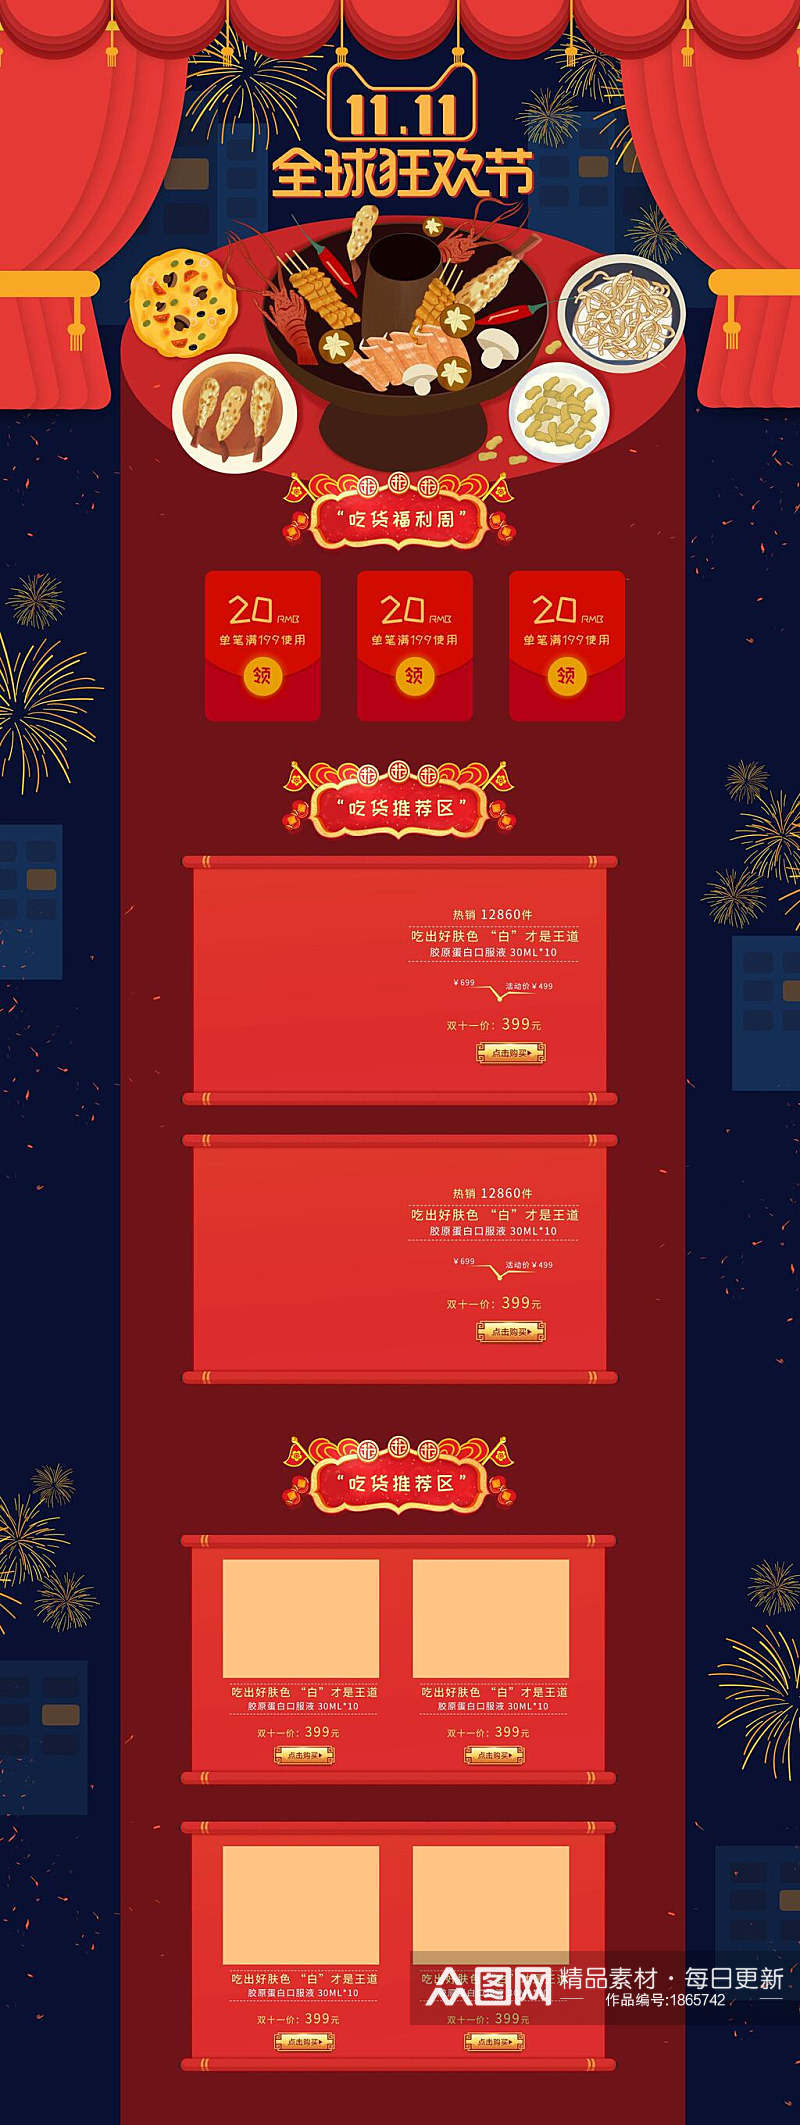 中式双十一全球狂欢节美食促销电商首页素材